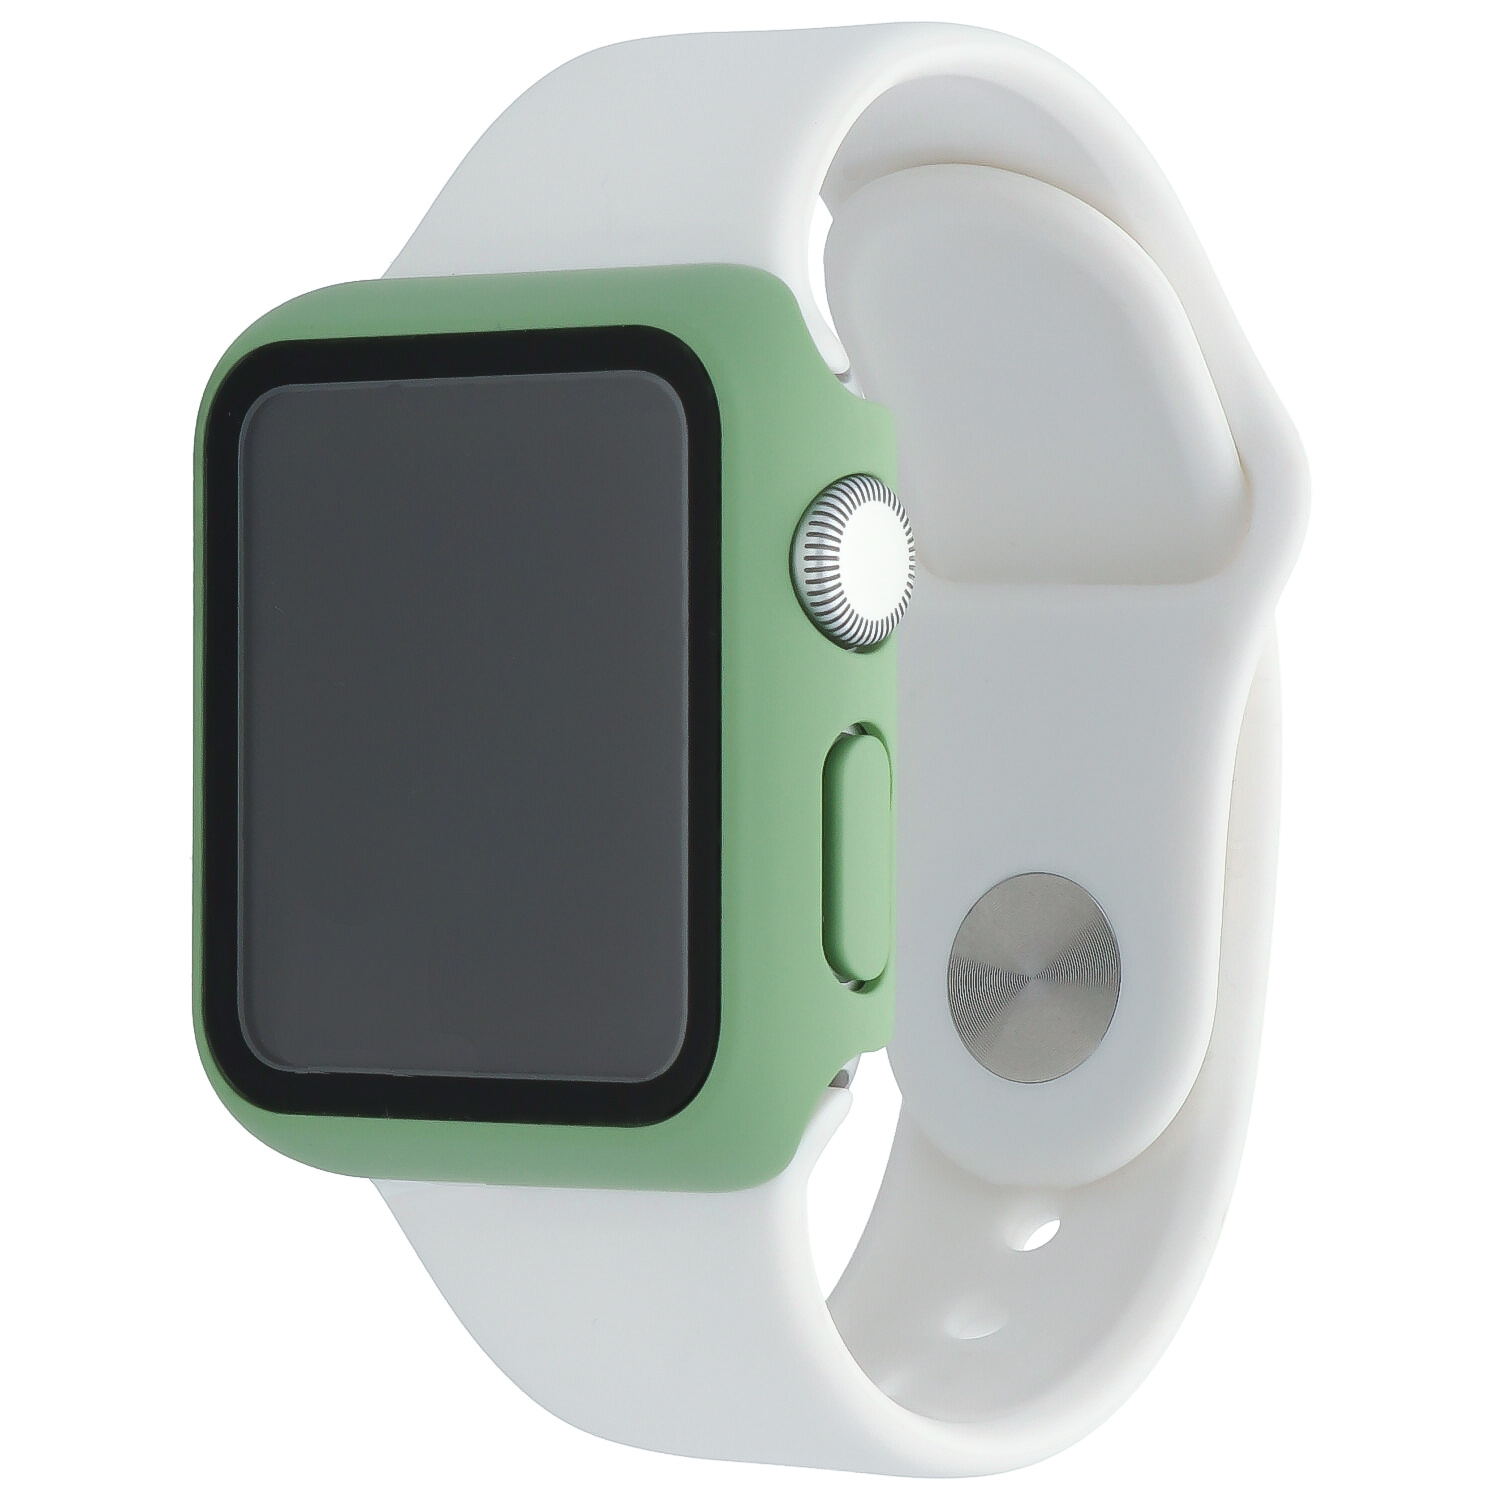 Estuche rígido para el Apple Watch - verde menta